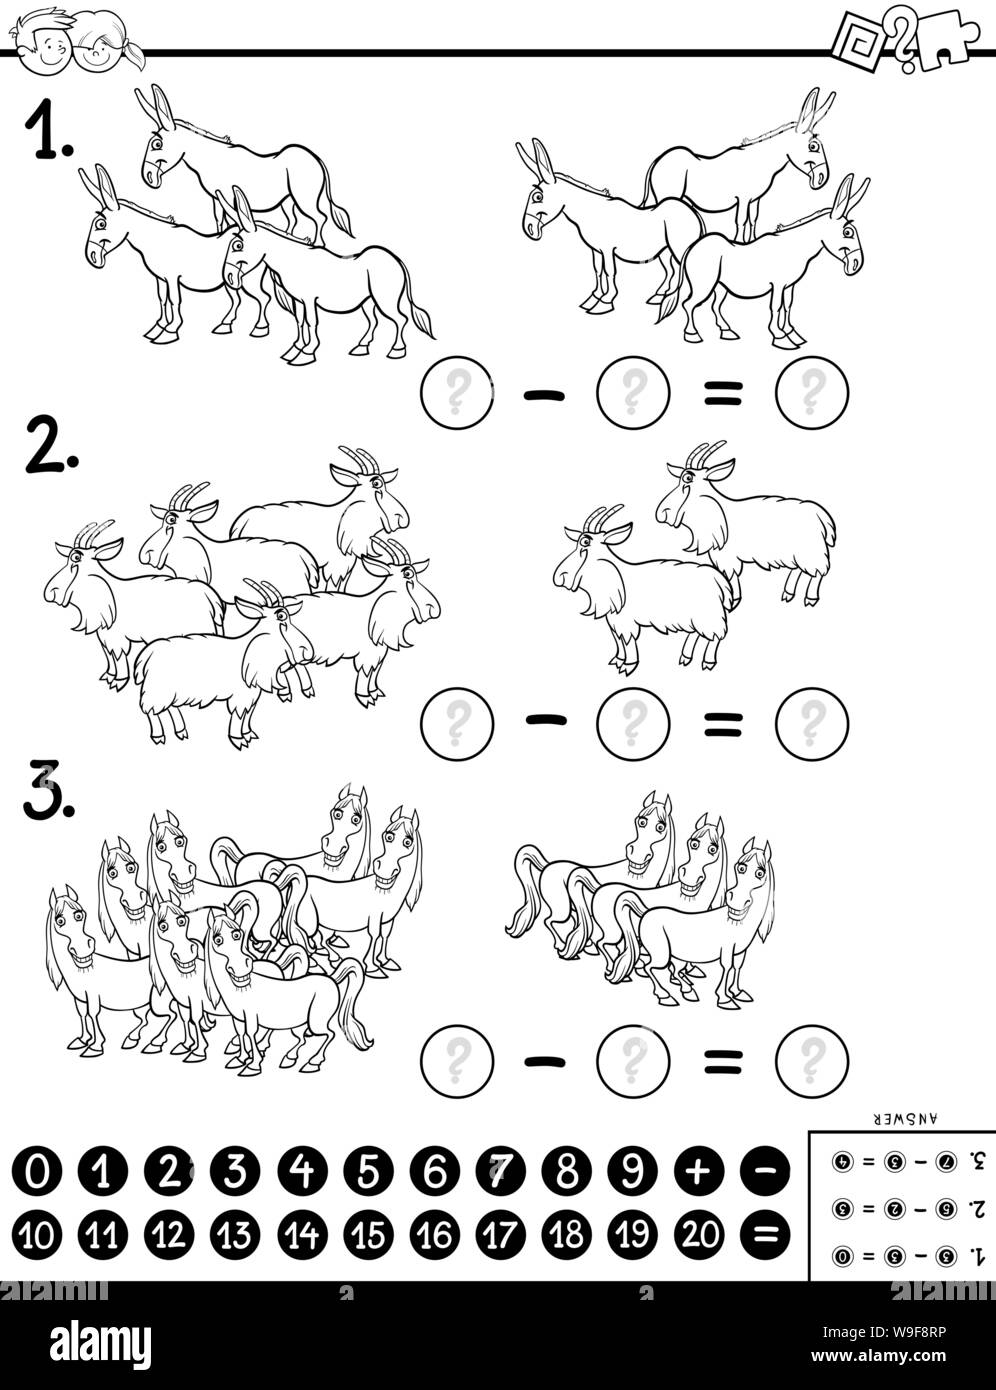 Ilustración caricatura en blanco y negro de matemática educativa resta tarea Rompecabezas para Niños con personajes de animales Coloring Book Ilustración del Vector